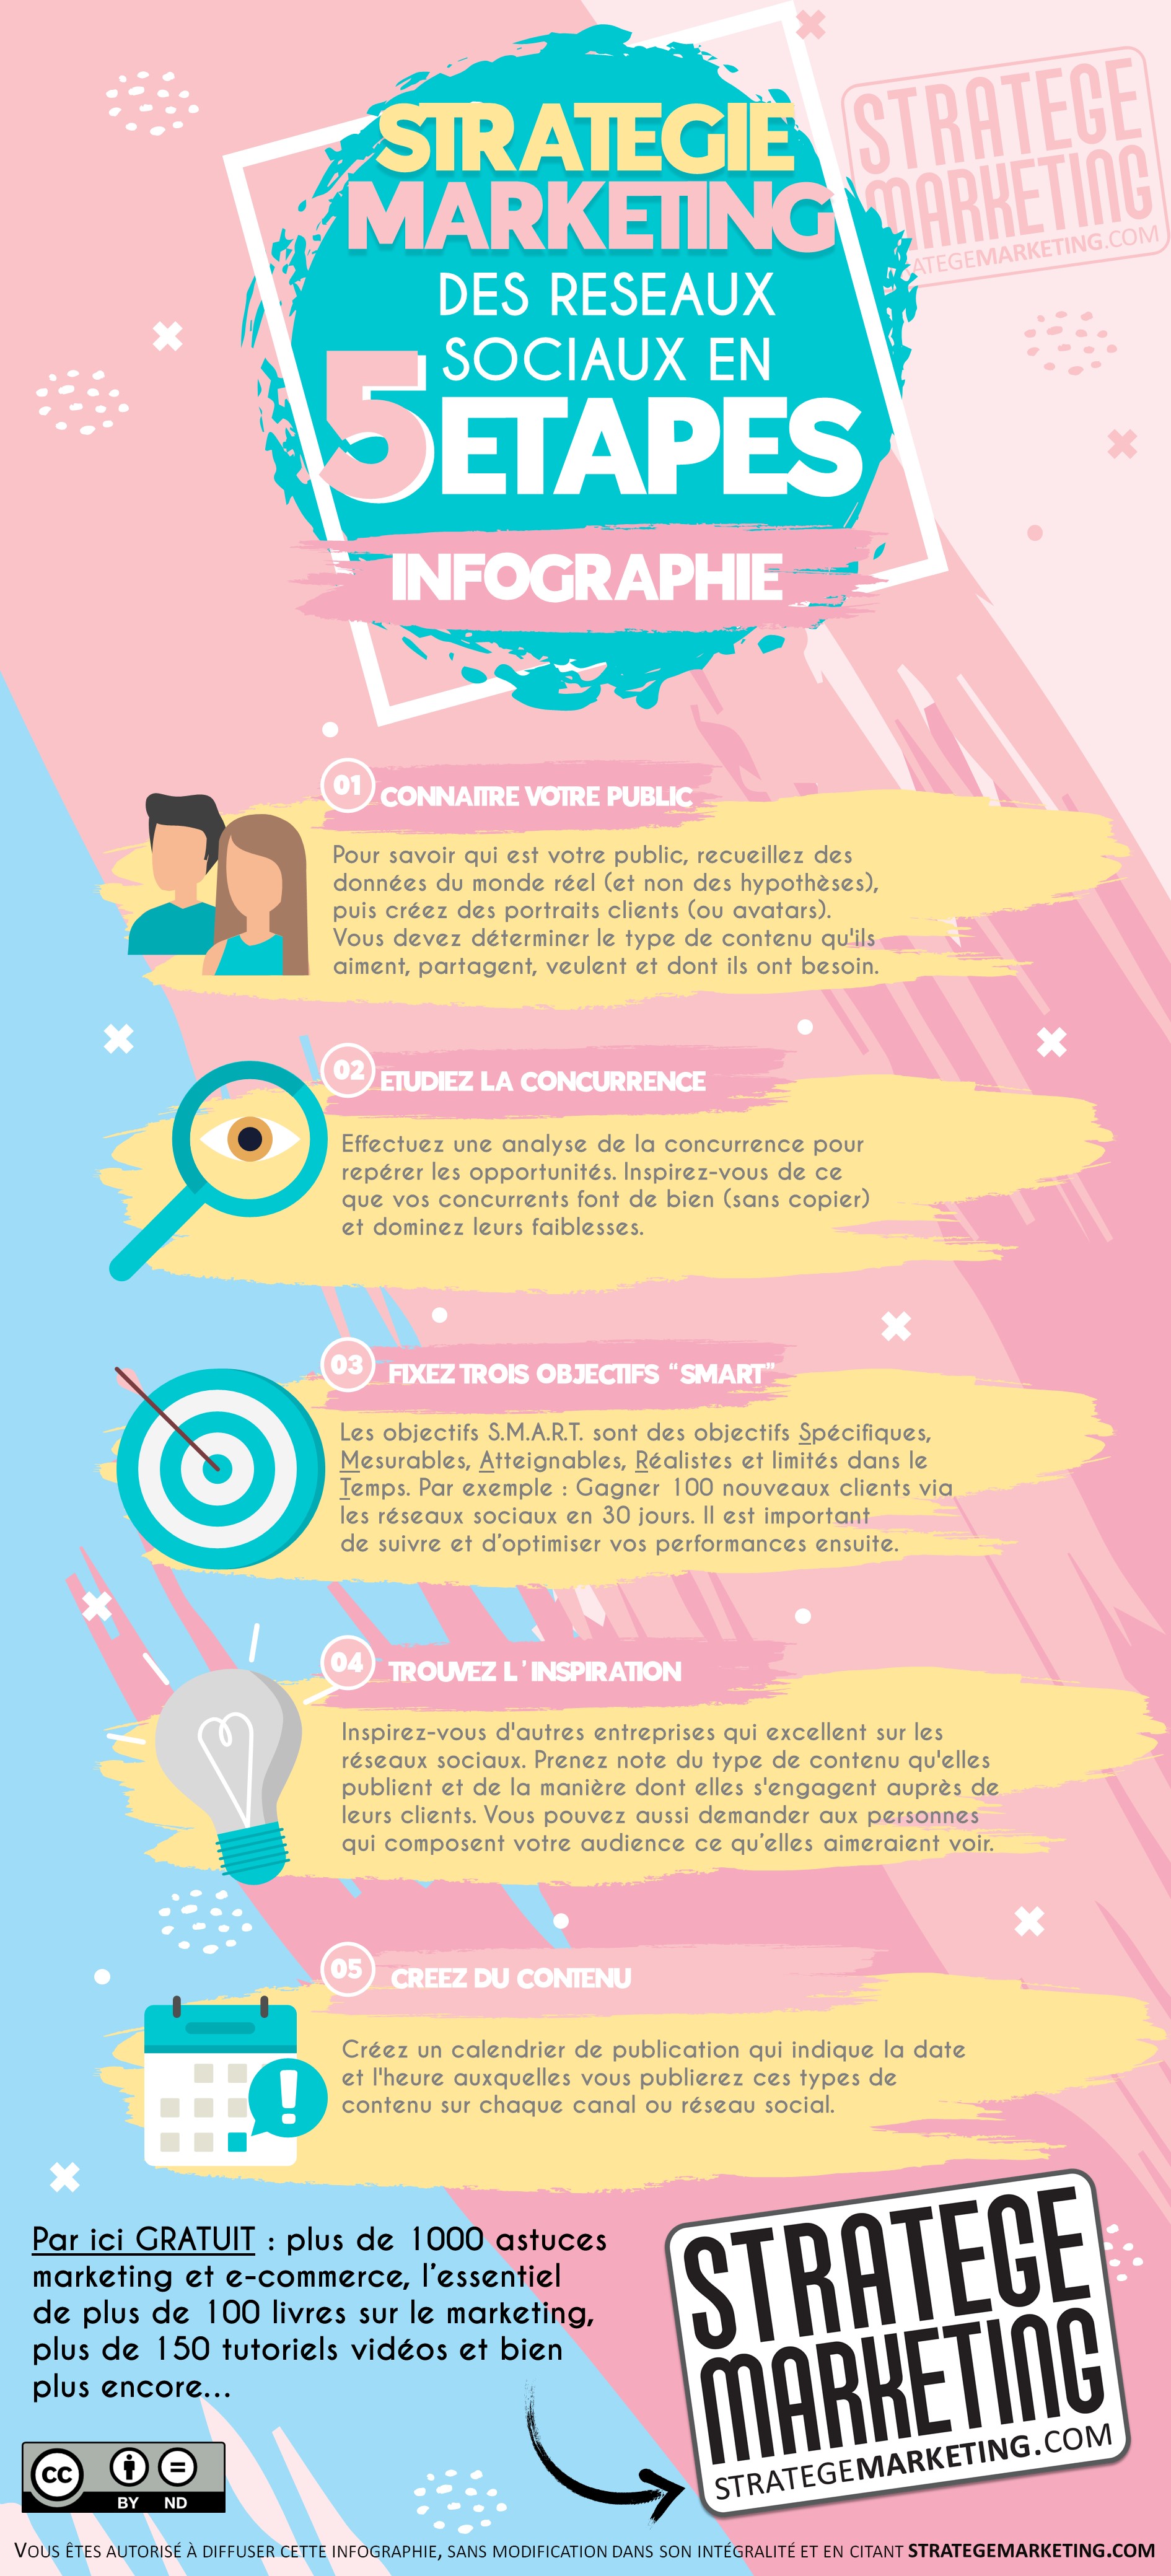 Stratégie marketing des réseaux sociaux en 5 étapes (infographie)